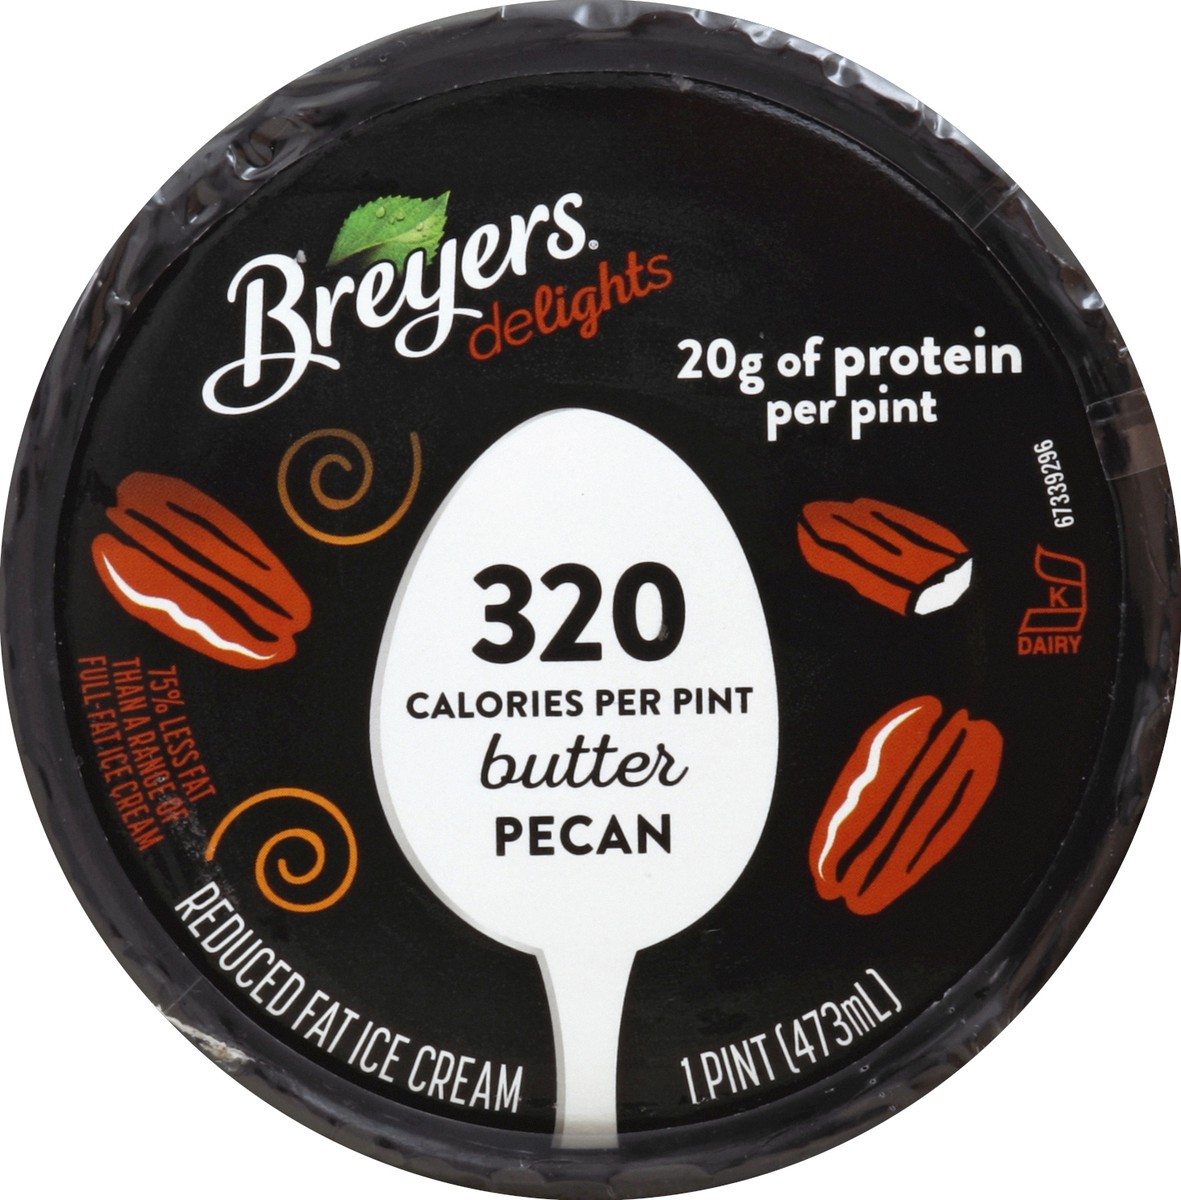 slide 2 of 6, Breyers Delights Butter Pecan Ice Cream, 1 pint